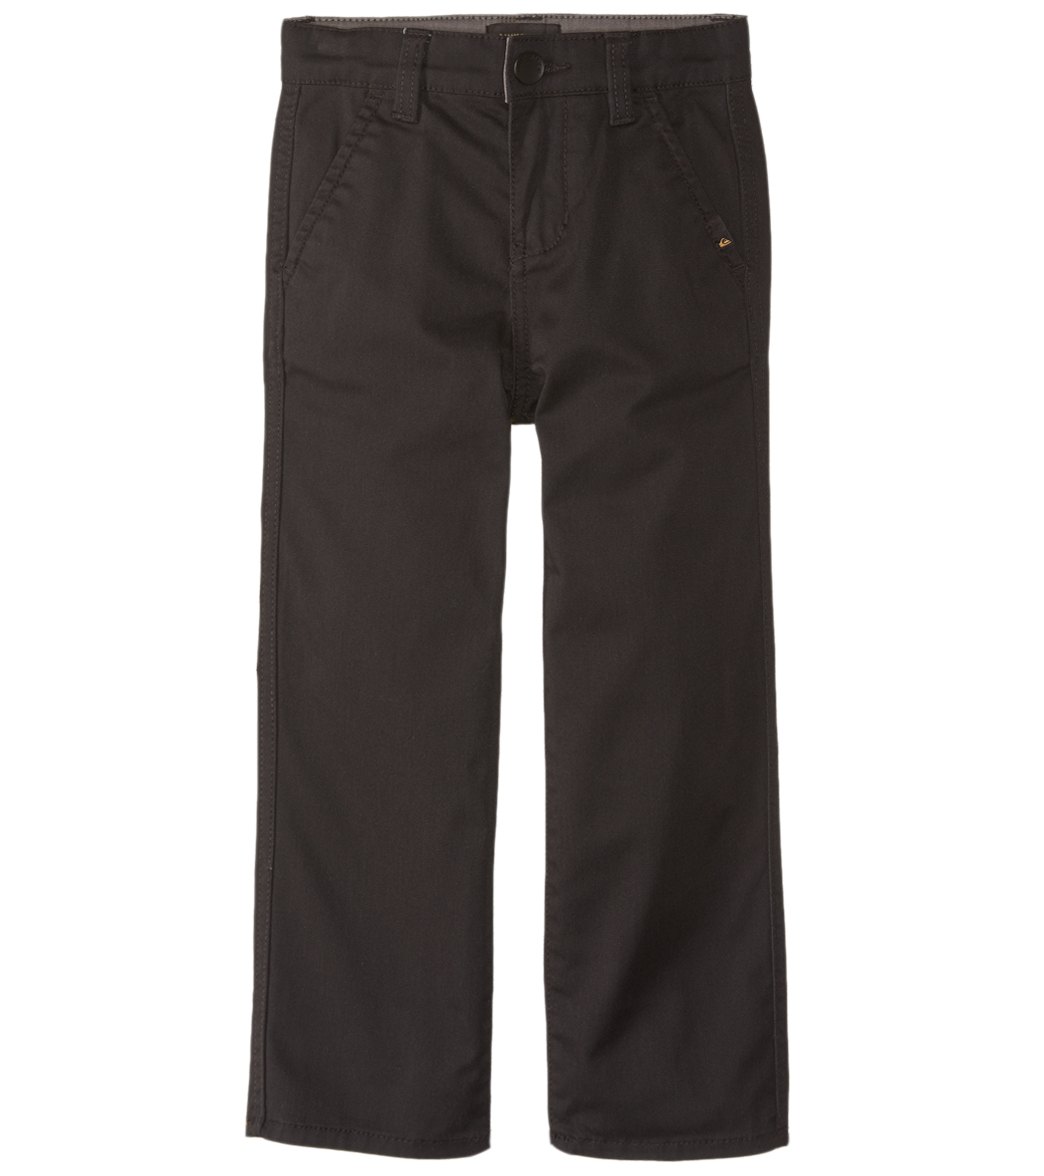 Quiksilver Boys' Everyday Union Pants 2T-7X - Black 2T Cotton/Polyester - Swimoutlet.com